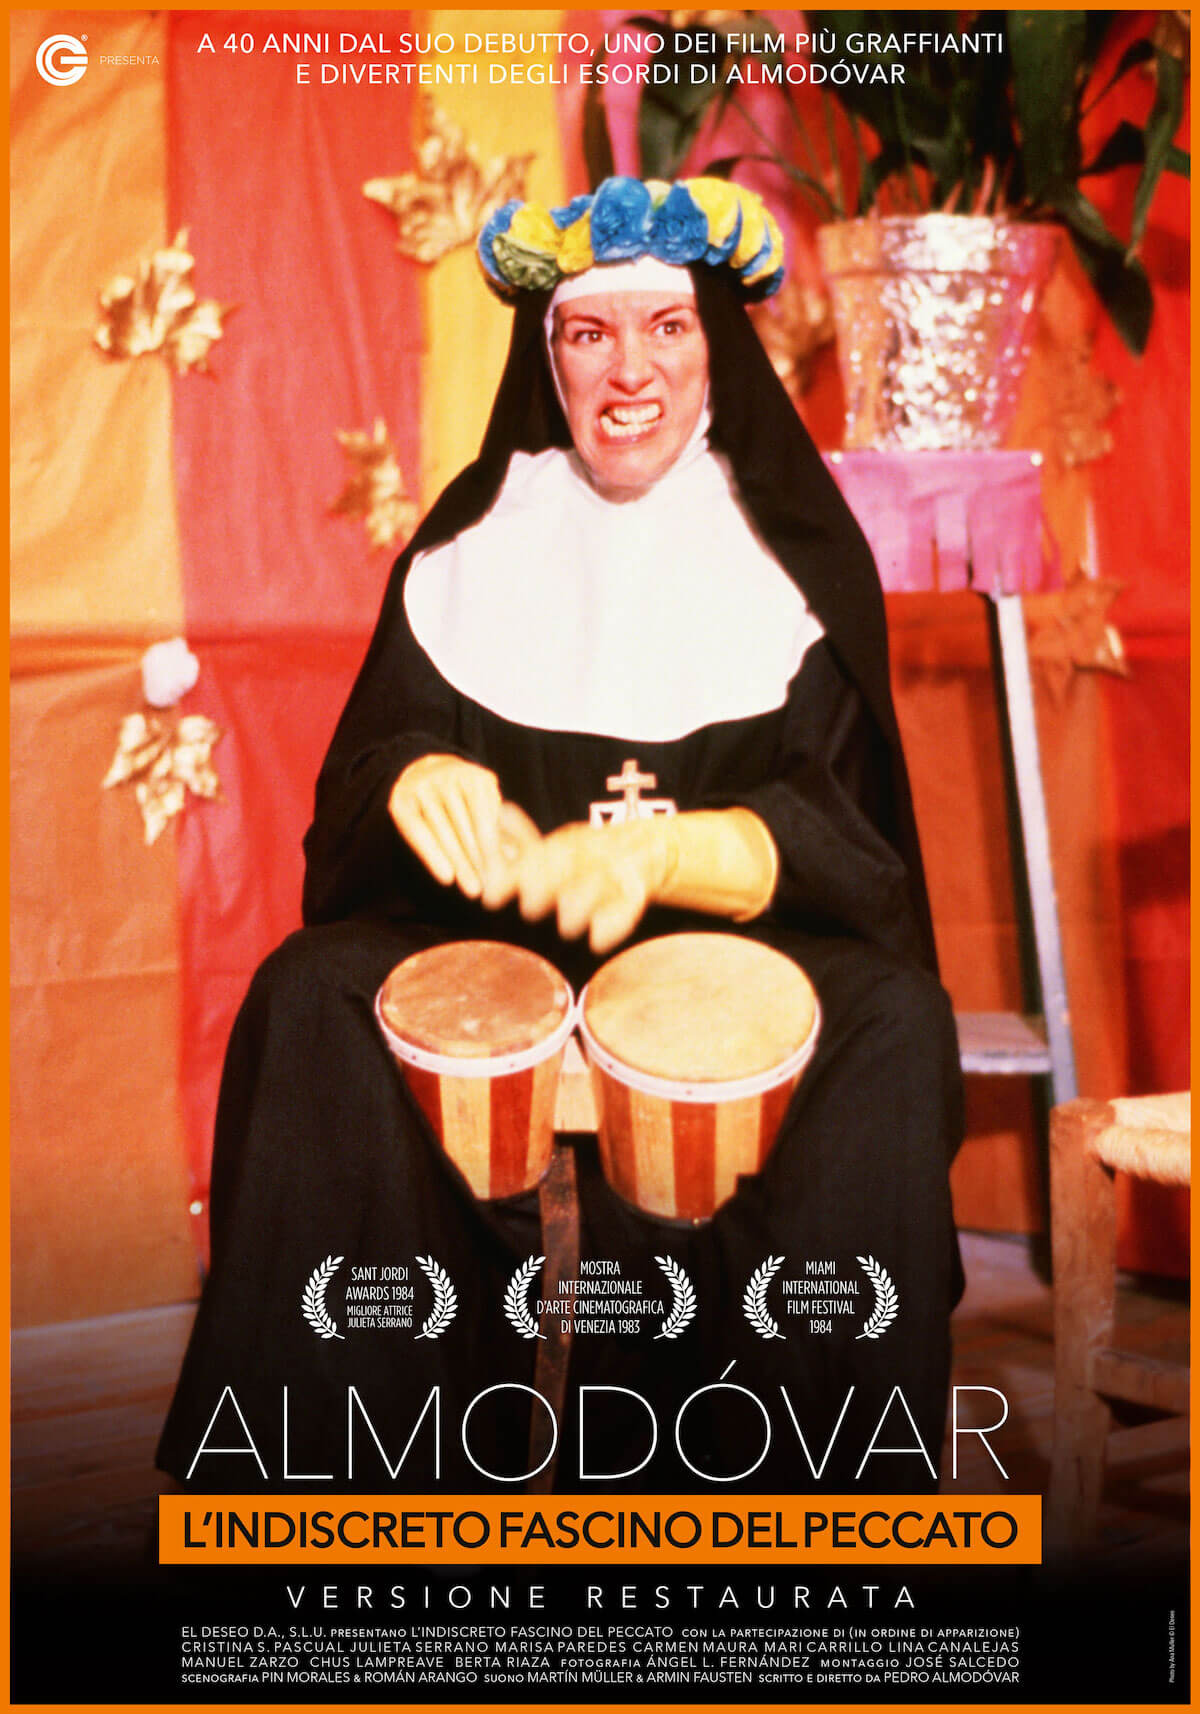 Pedro Almodovar, 5 suoi film di culto tornano nei cinema d'Italia. Poster e trailer - lindiscreto fascino del peccato - Gay.it